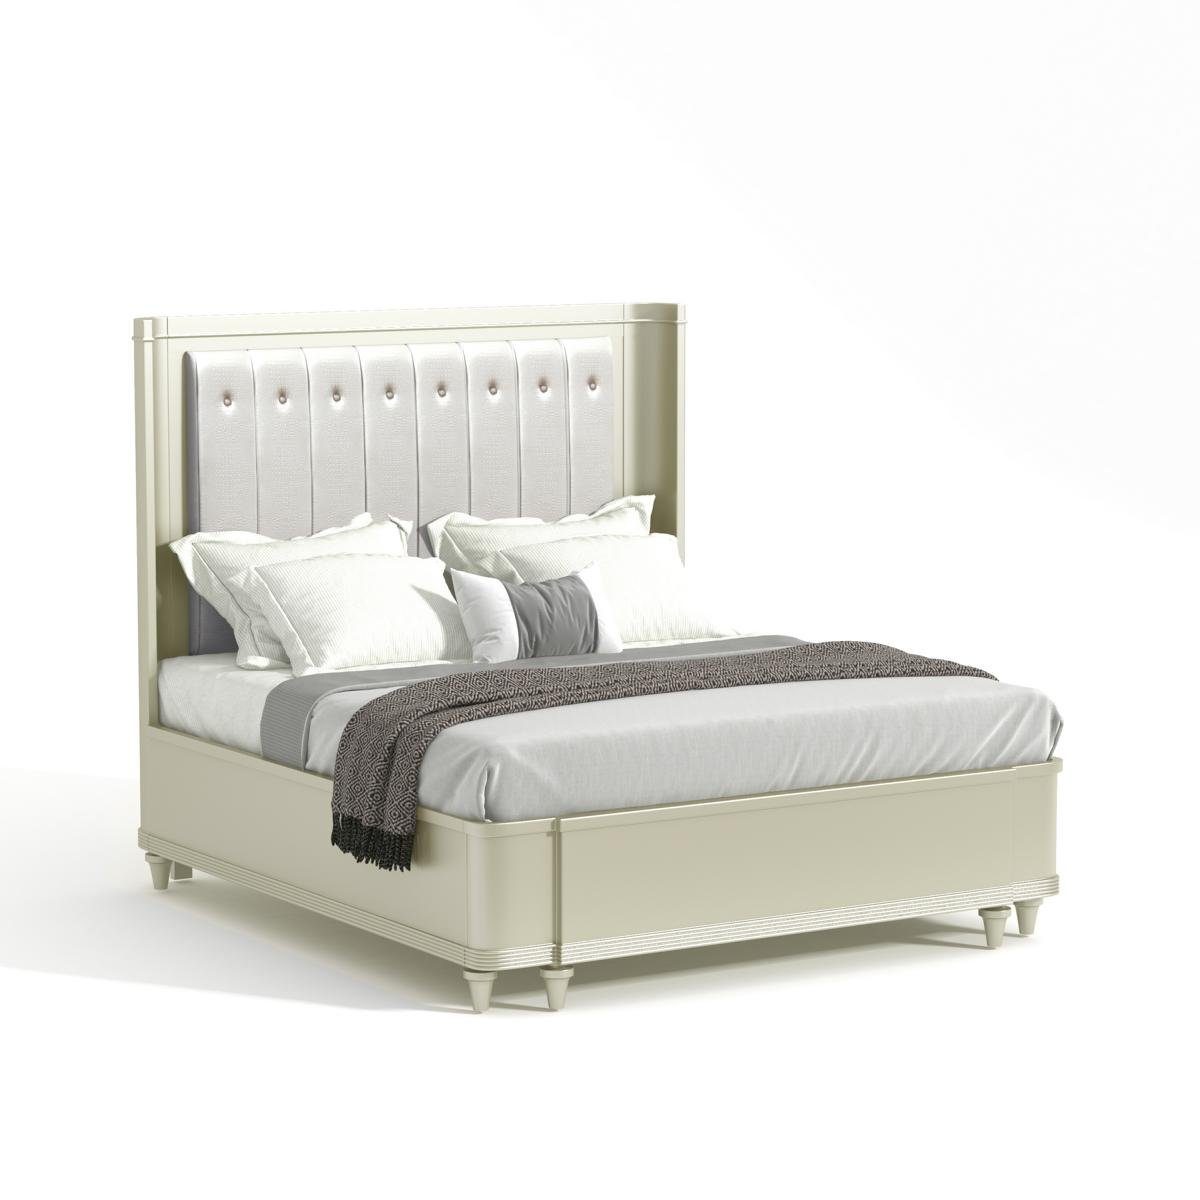 JVmoebel Bett, Polster Design Luxus Bett 180 x 200cm Stoff Betten Leder | Bettgestelle